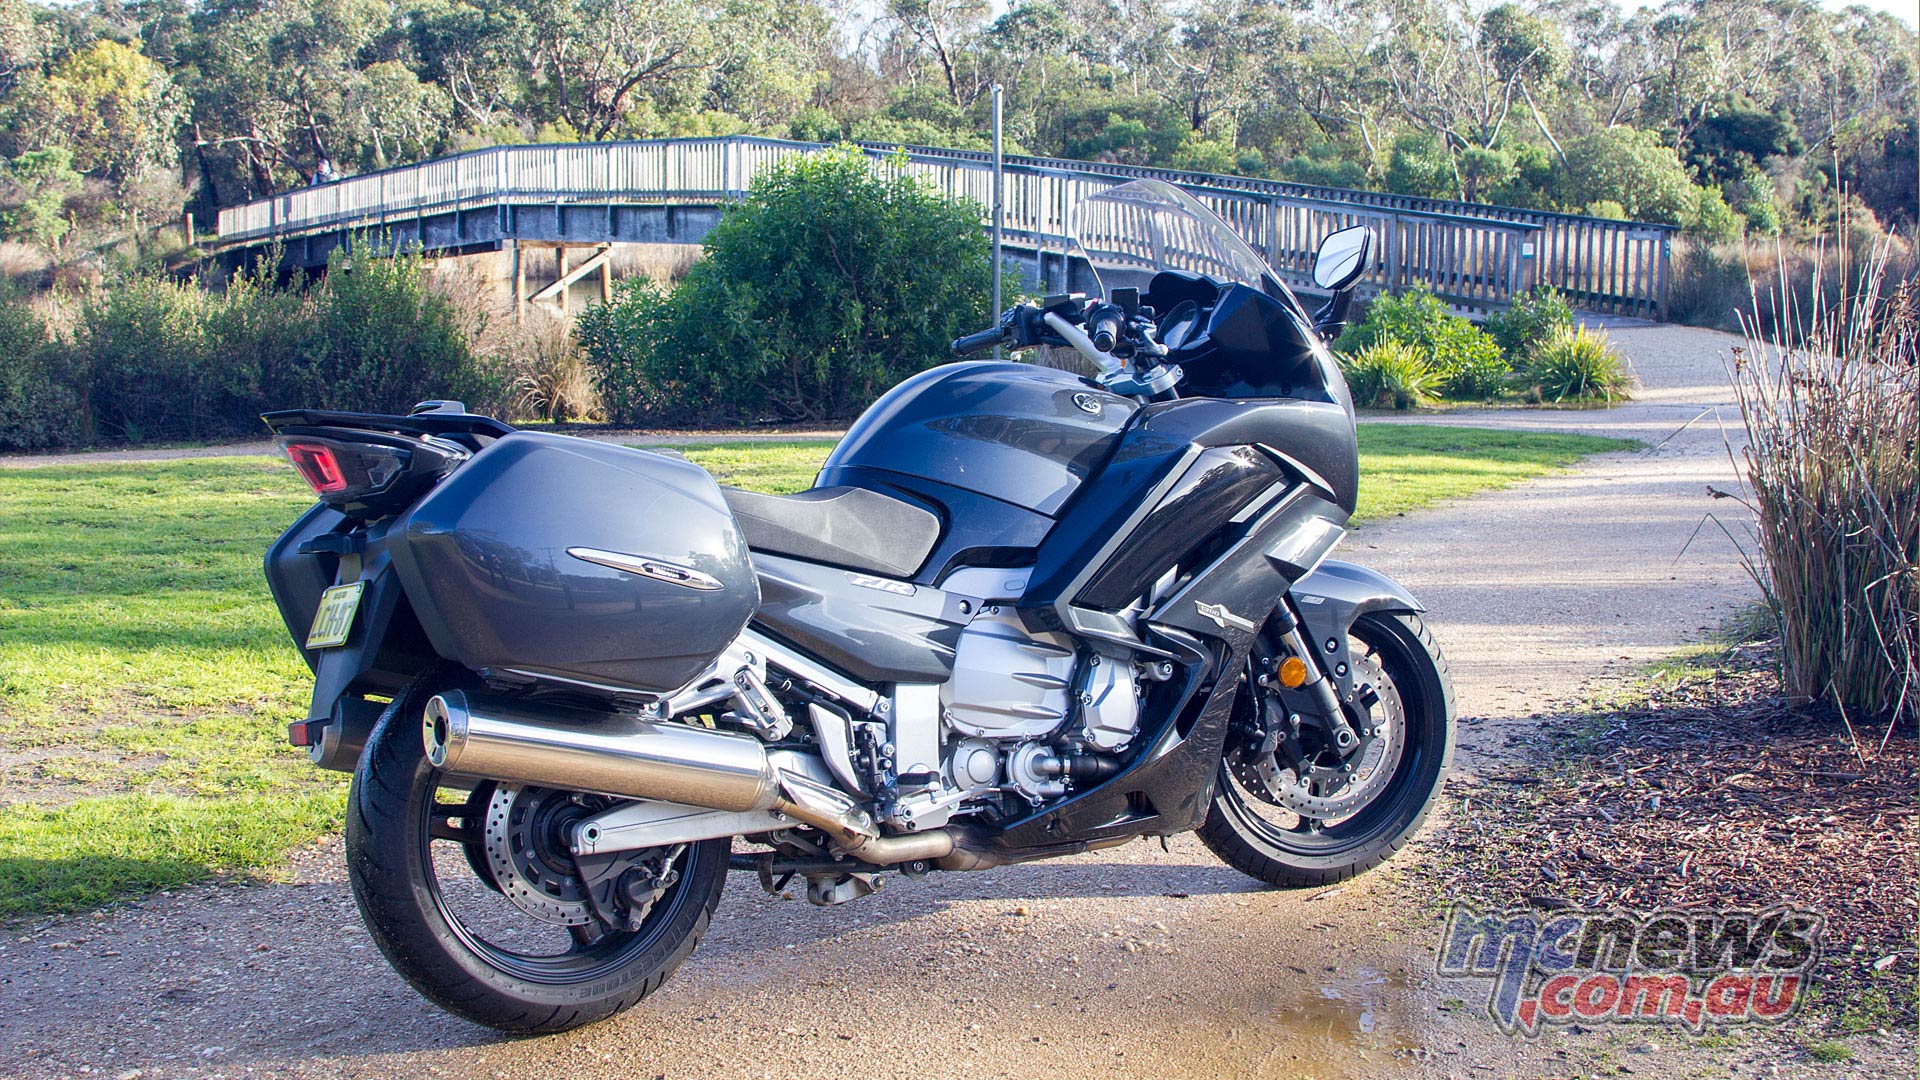 Væsen Monet Broderskab 2019 Yamaha FJR1300 Review | Motorcycle Tests | MCNews